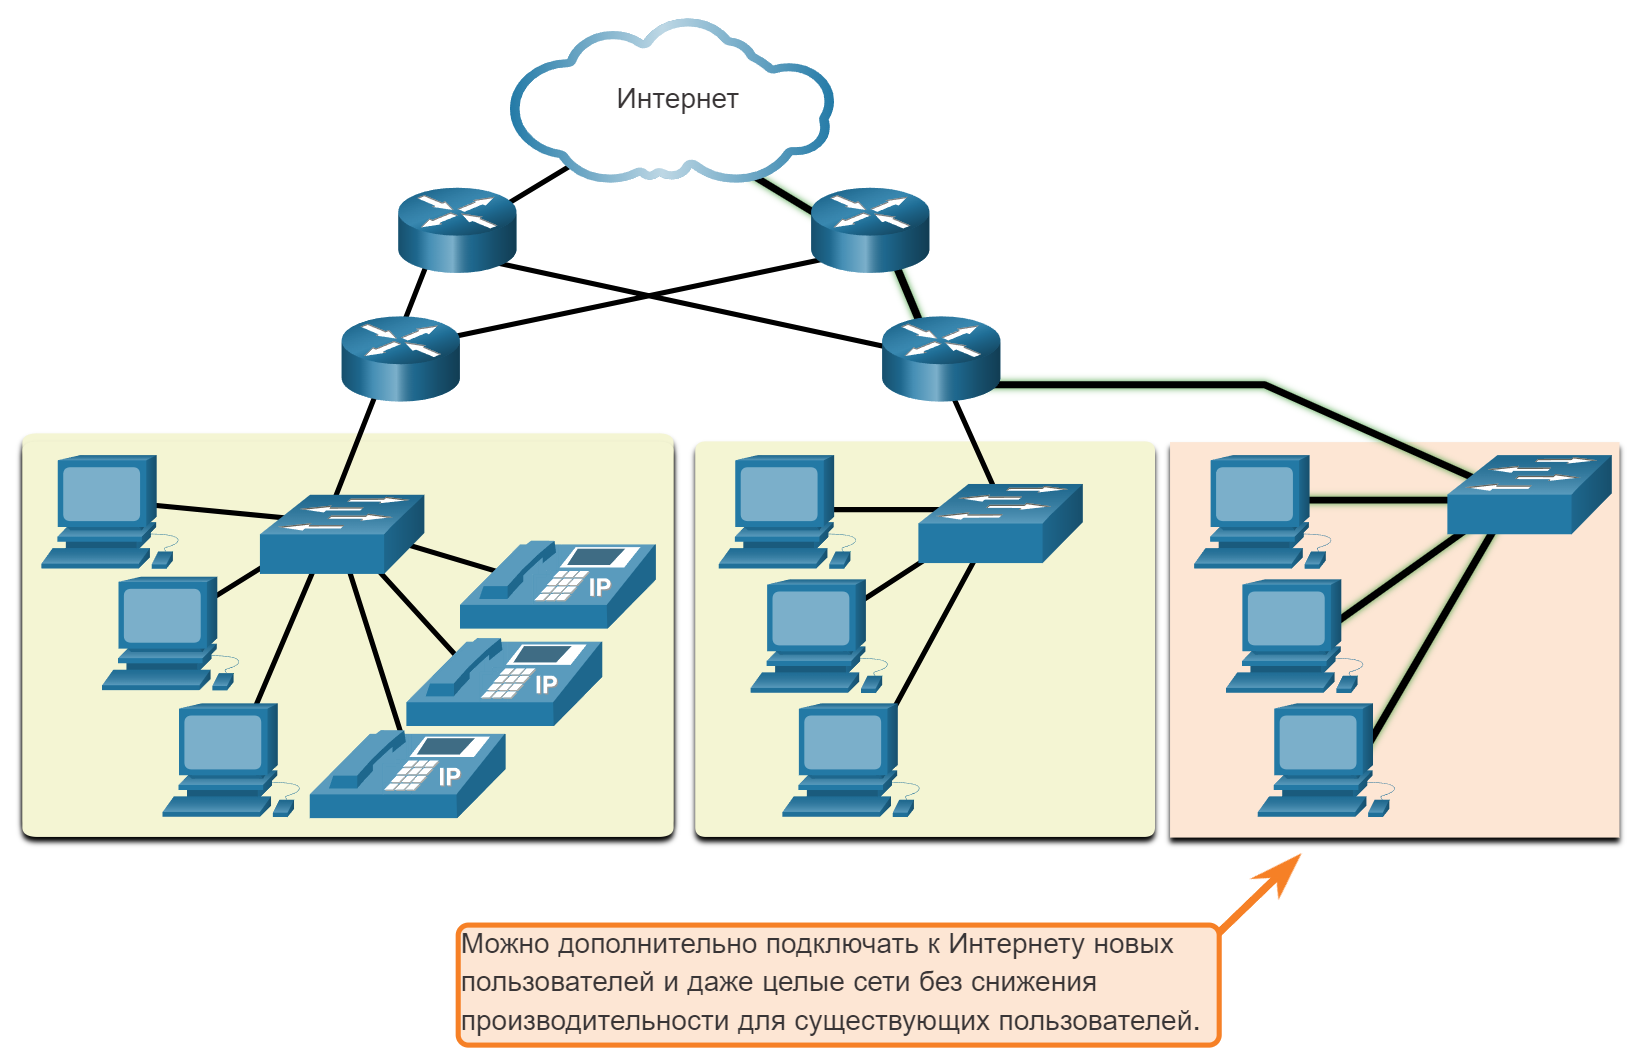 Сети support. Топология корпоративной сети. Локальная сеть. Современные сетевые технологии. Масштабируемость Ethernet.